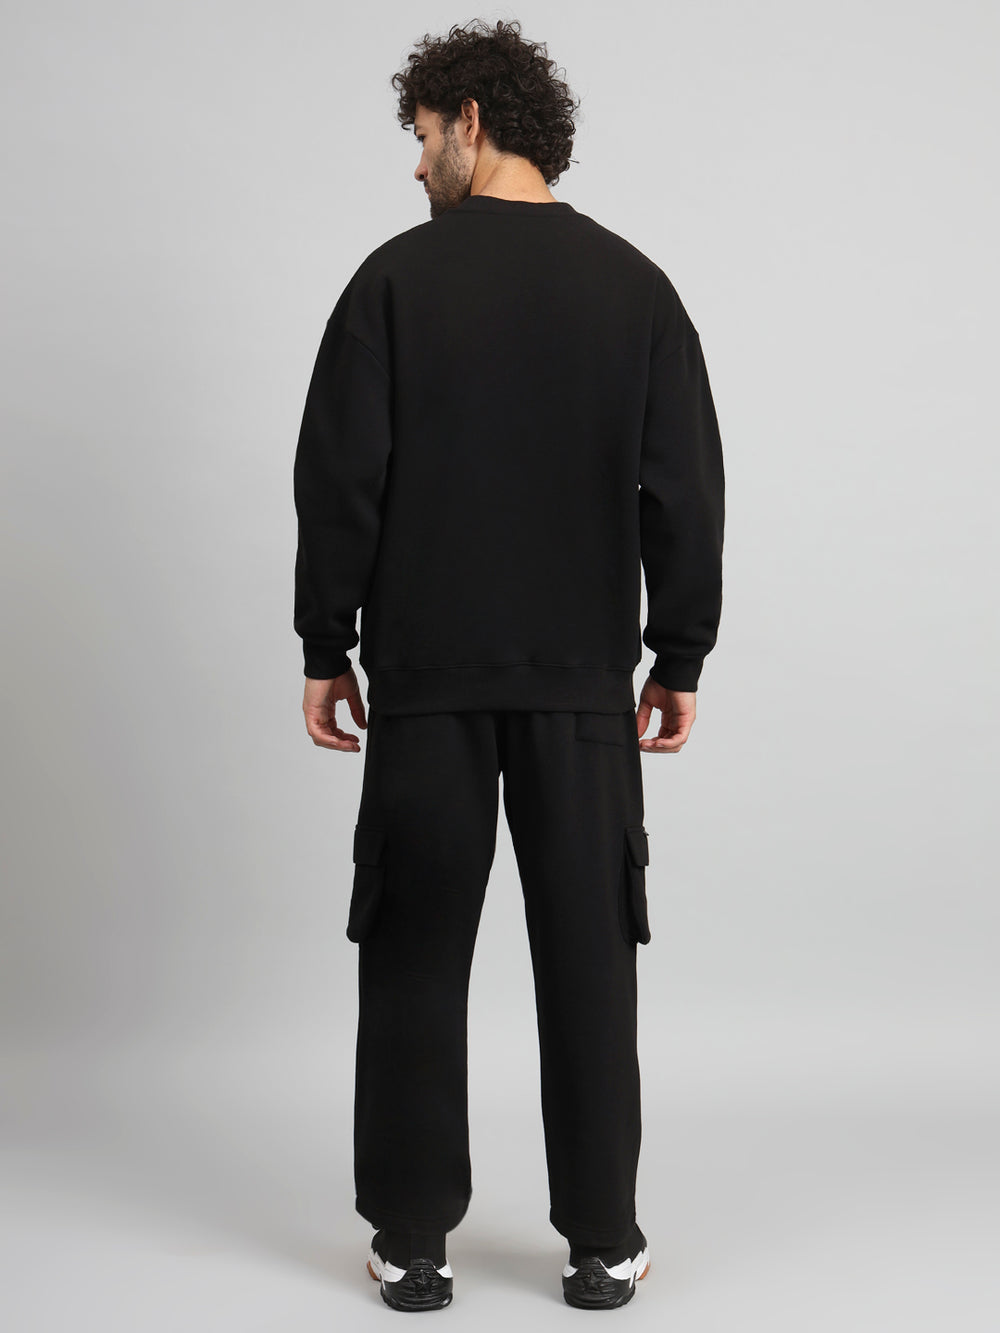 Griffel Men Oversized Fit GFL09 Neon Print Round Neck 100% Cotton Fleece Black Tracksuit - griffel